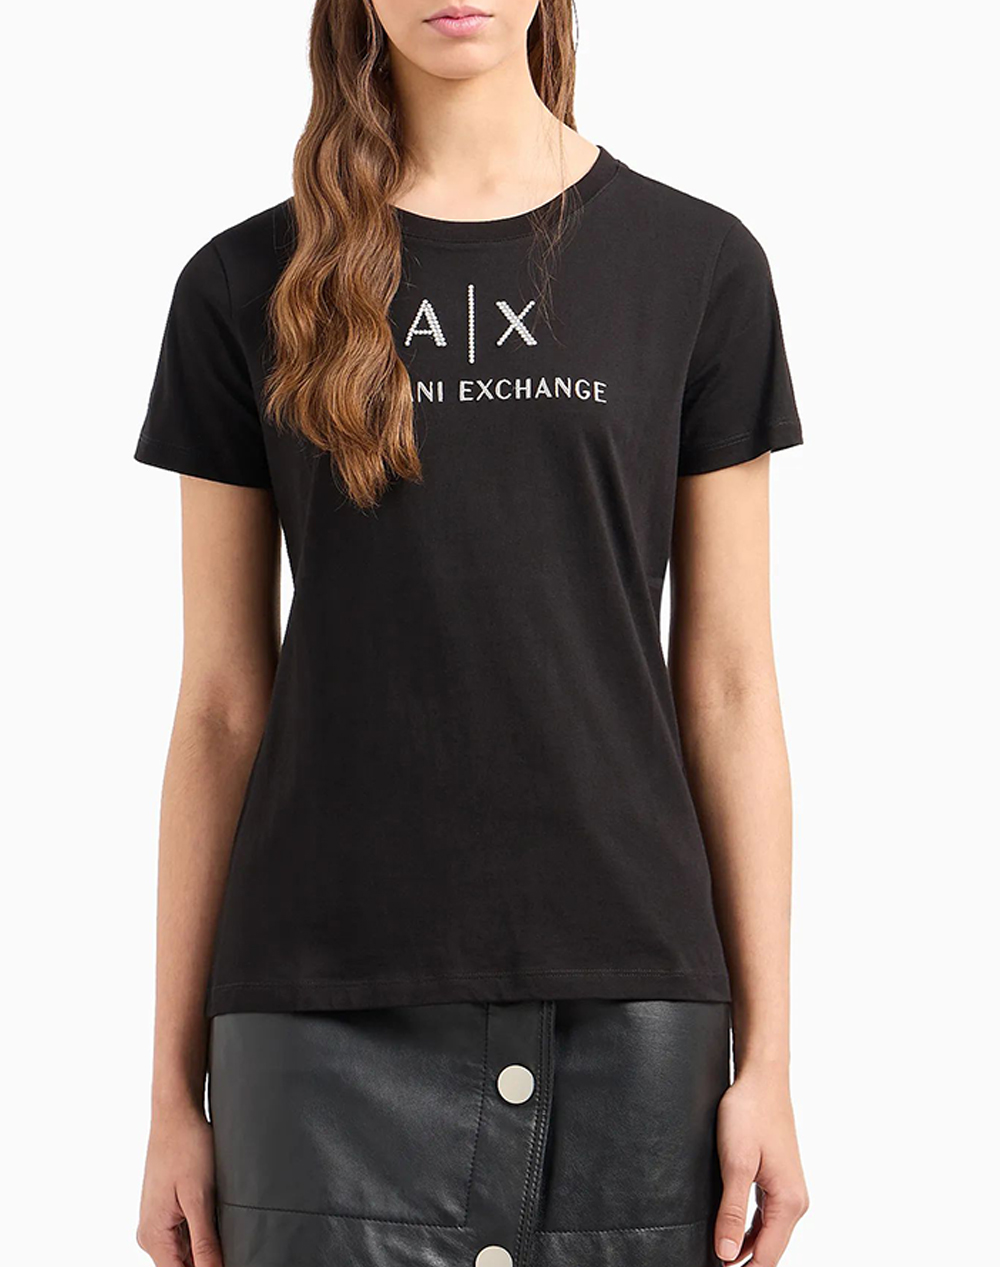 Γυναικεία t-shirt, σε κανονική γραμμή, κοντομάνικη, με στρογγυλή λαιμόκοψη και κεντητό λογότυπο με strass λεπτομέρεις στο στήθος. (Σύνθεση: 100% Βαμβάκι)